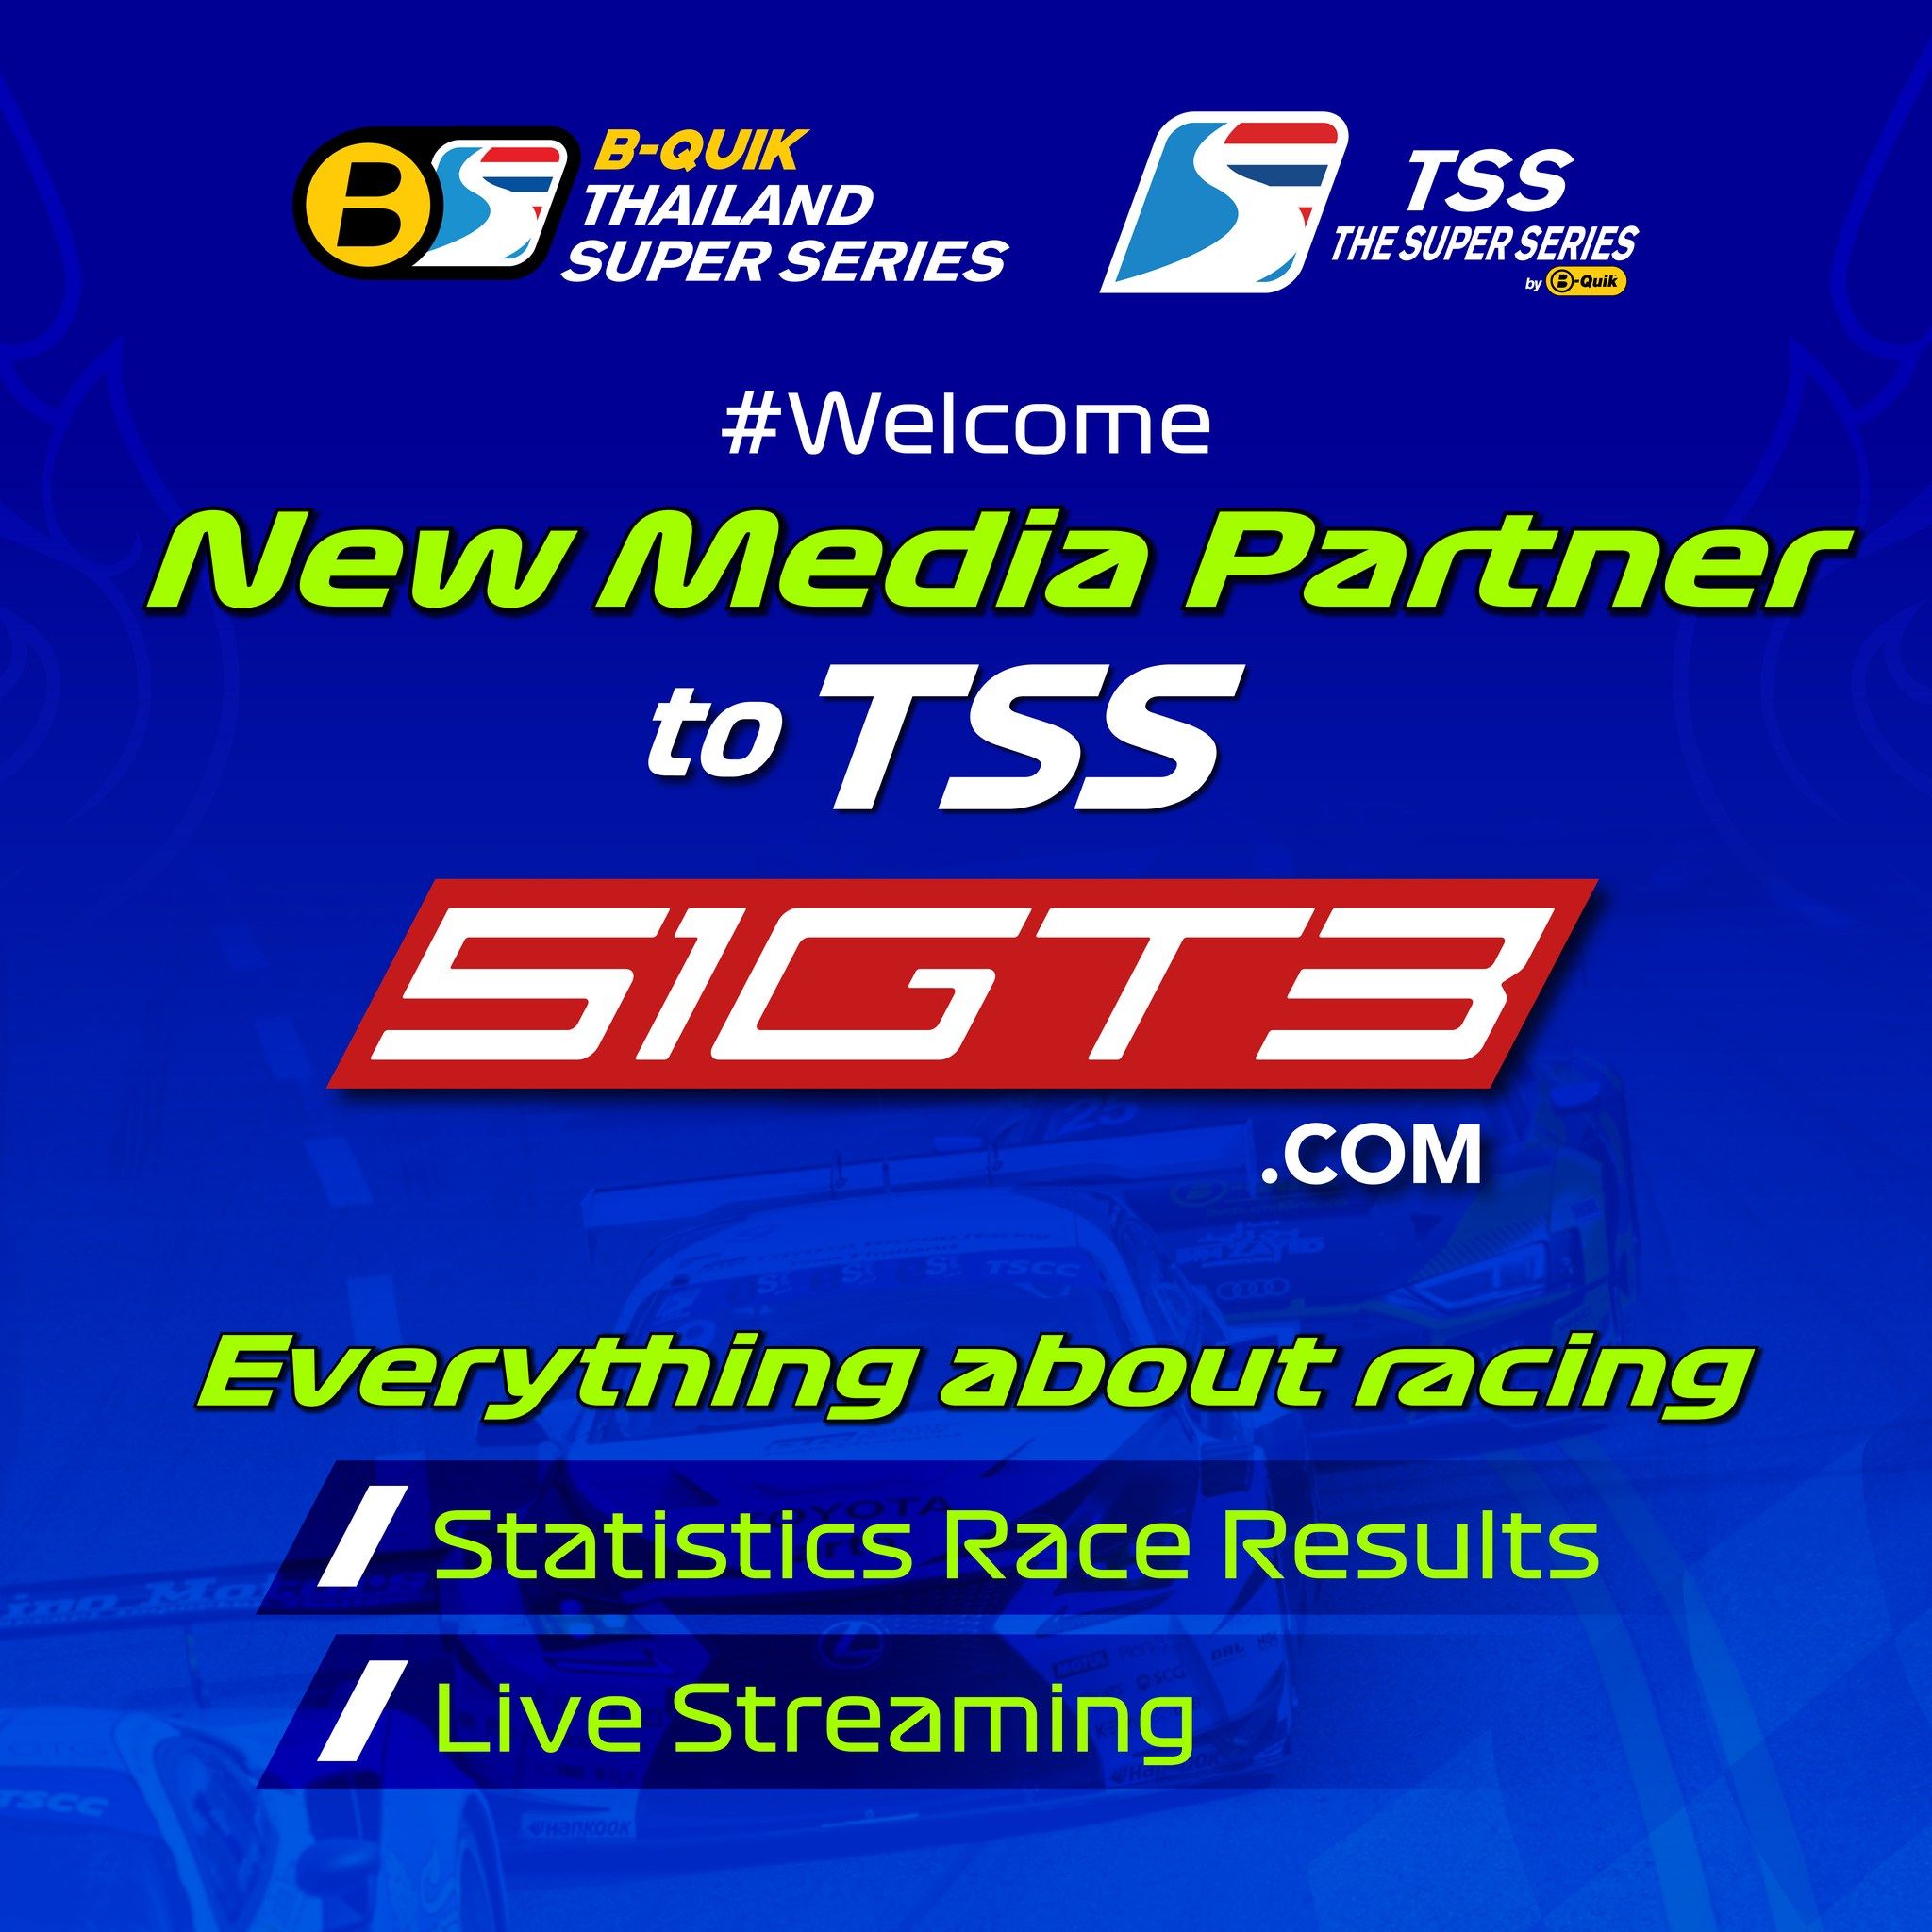 Bienvenue nouveau partenaire média chez TSS - 51GT3.com